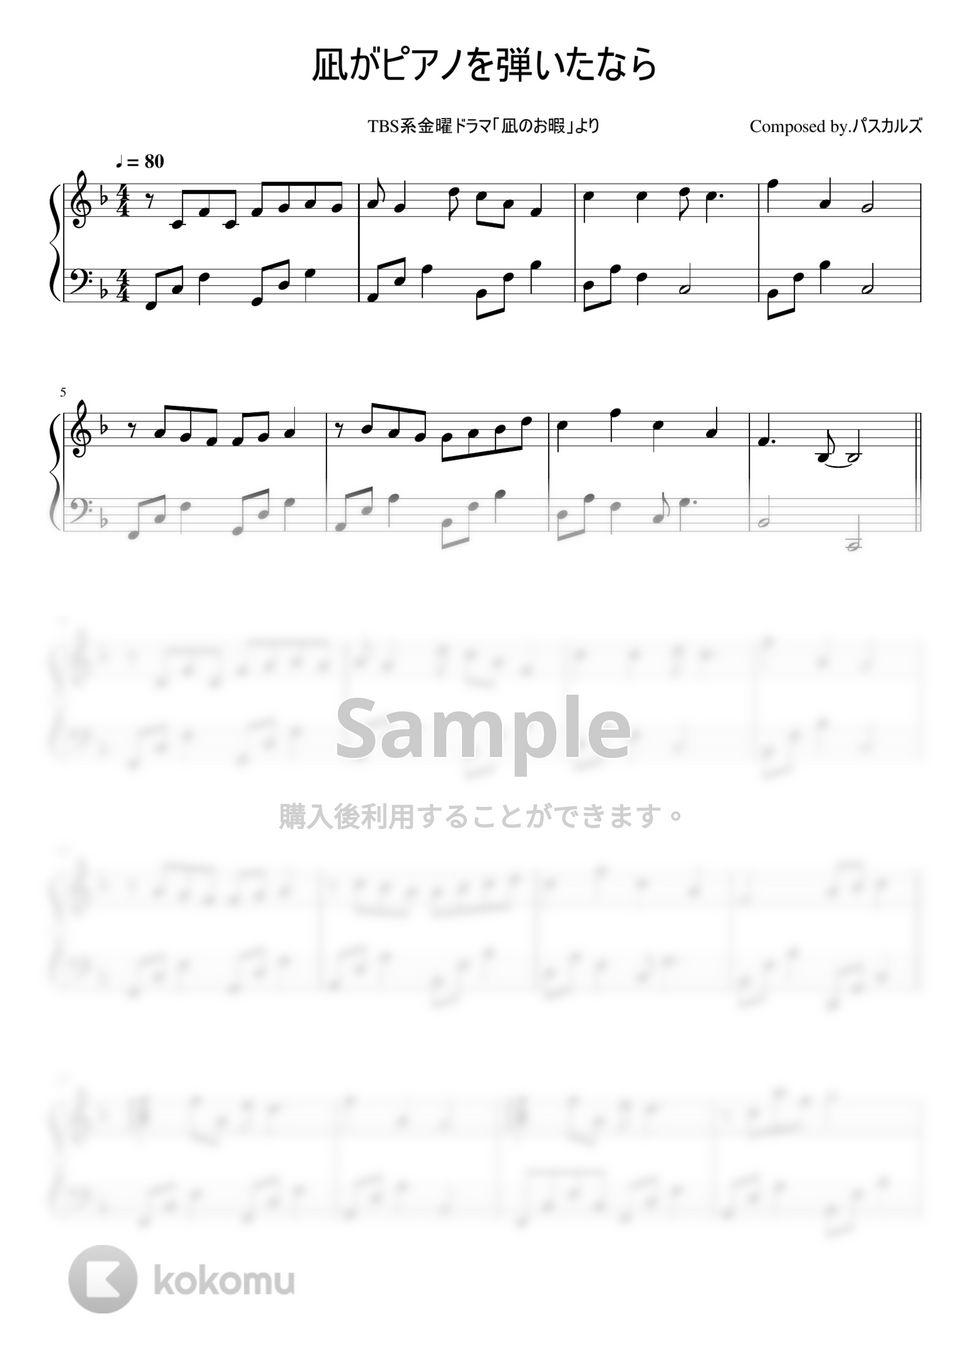 ドラマ「凪のお暇」 - 凪がピアノを弾いたなら by ちゃんRINA。